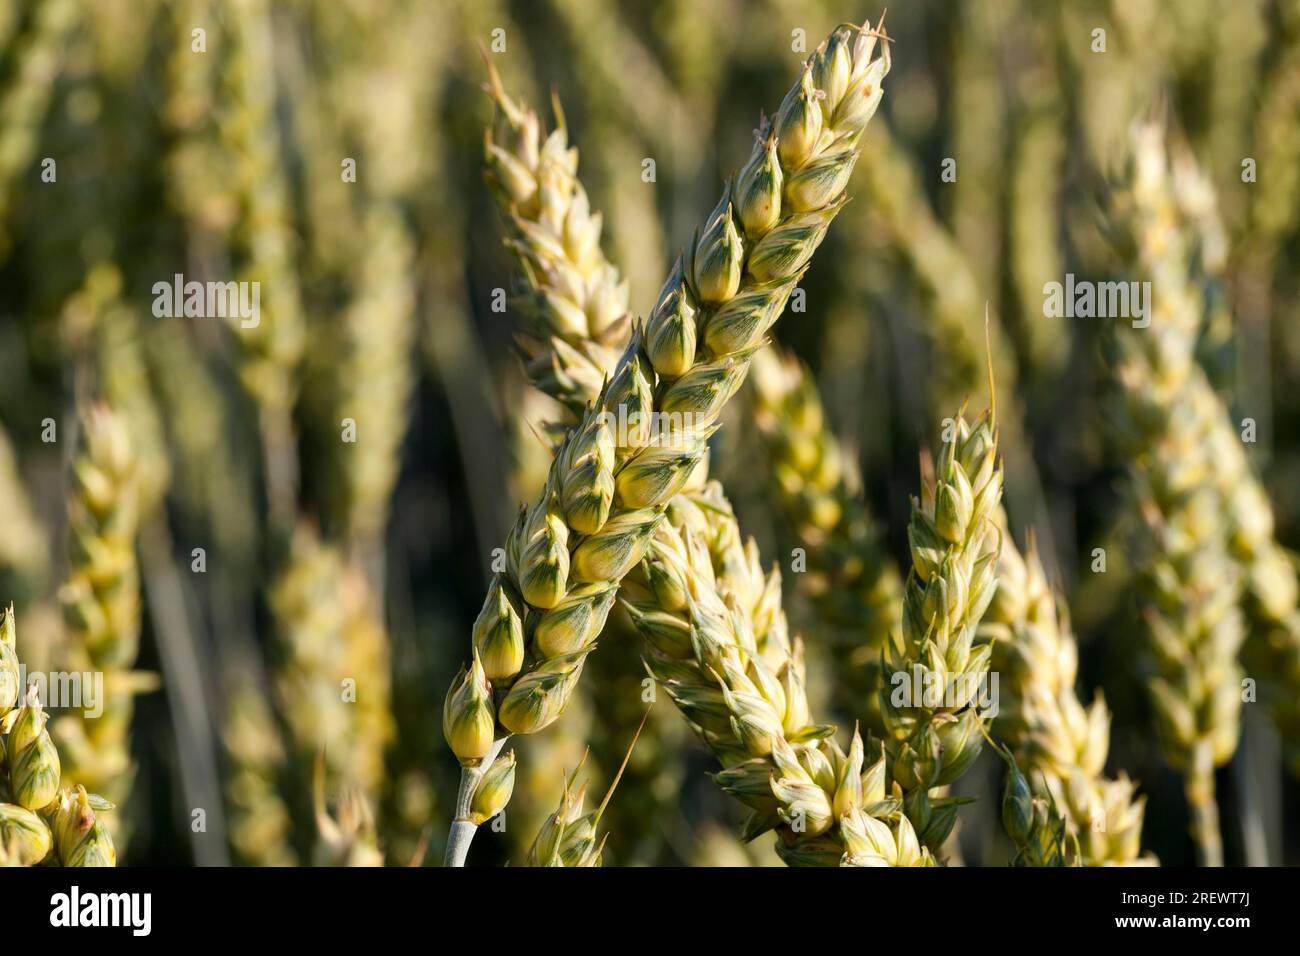 Campo agricolo seminato con grano che è quasi maturo e diventa giallo colore dorato, grano non è pronto per la raccolta, grande resa di grano di unmaturo Foto Stock